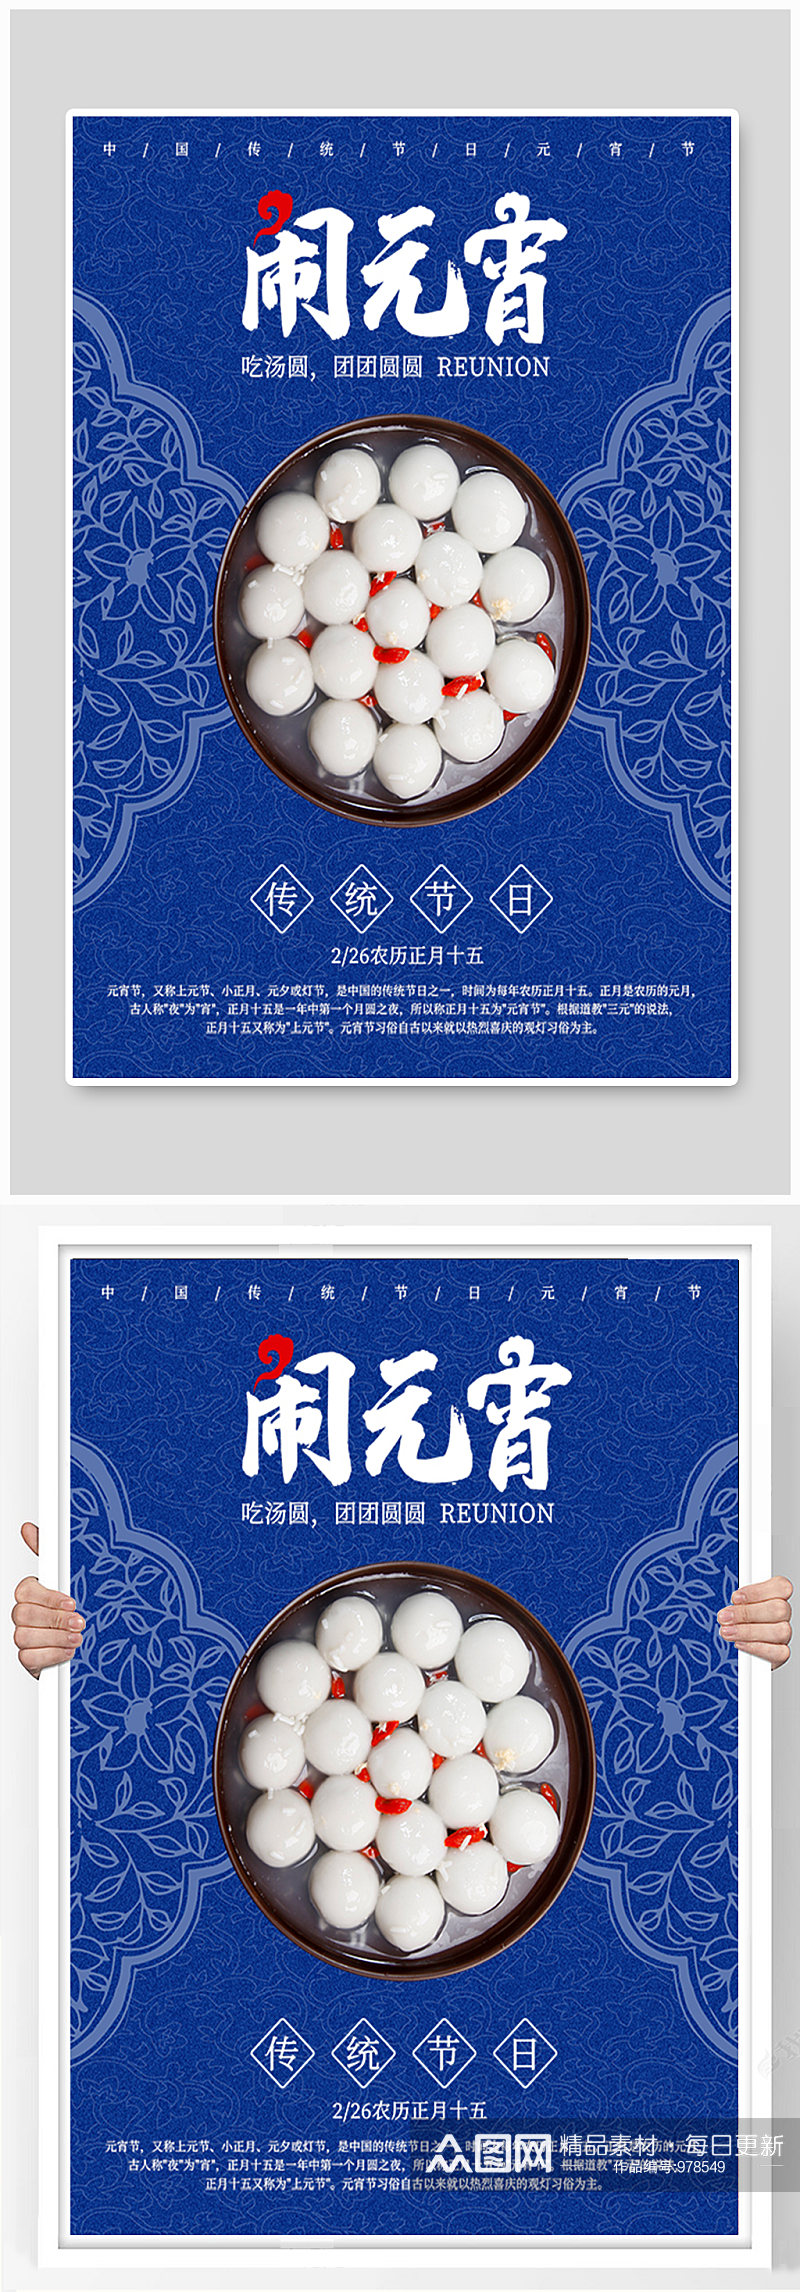 春节元宵节正月十五团圆吃汤圆宣传海报素材